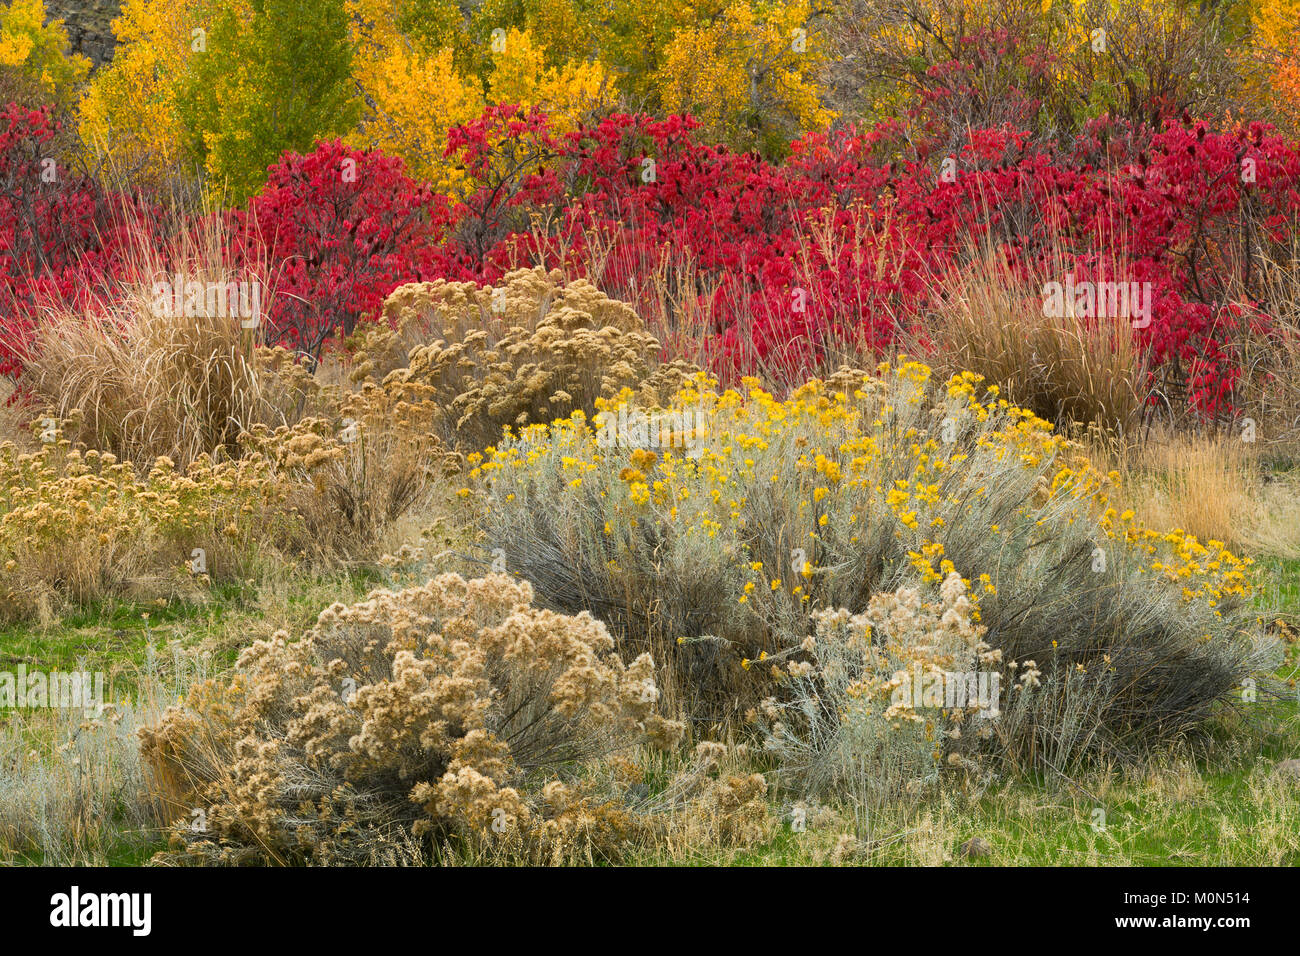 Ein wilder Garten Pflanzen entlang einem Flußbett in der Great Basin Wüste  von Washington. Rabbitbrush, Salbei, Sumach, und cottonwood sorgen für  einen farbenfrohen Herbst Stockfotografie - Alamy